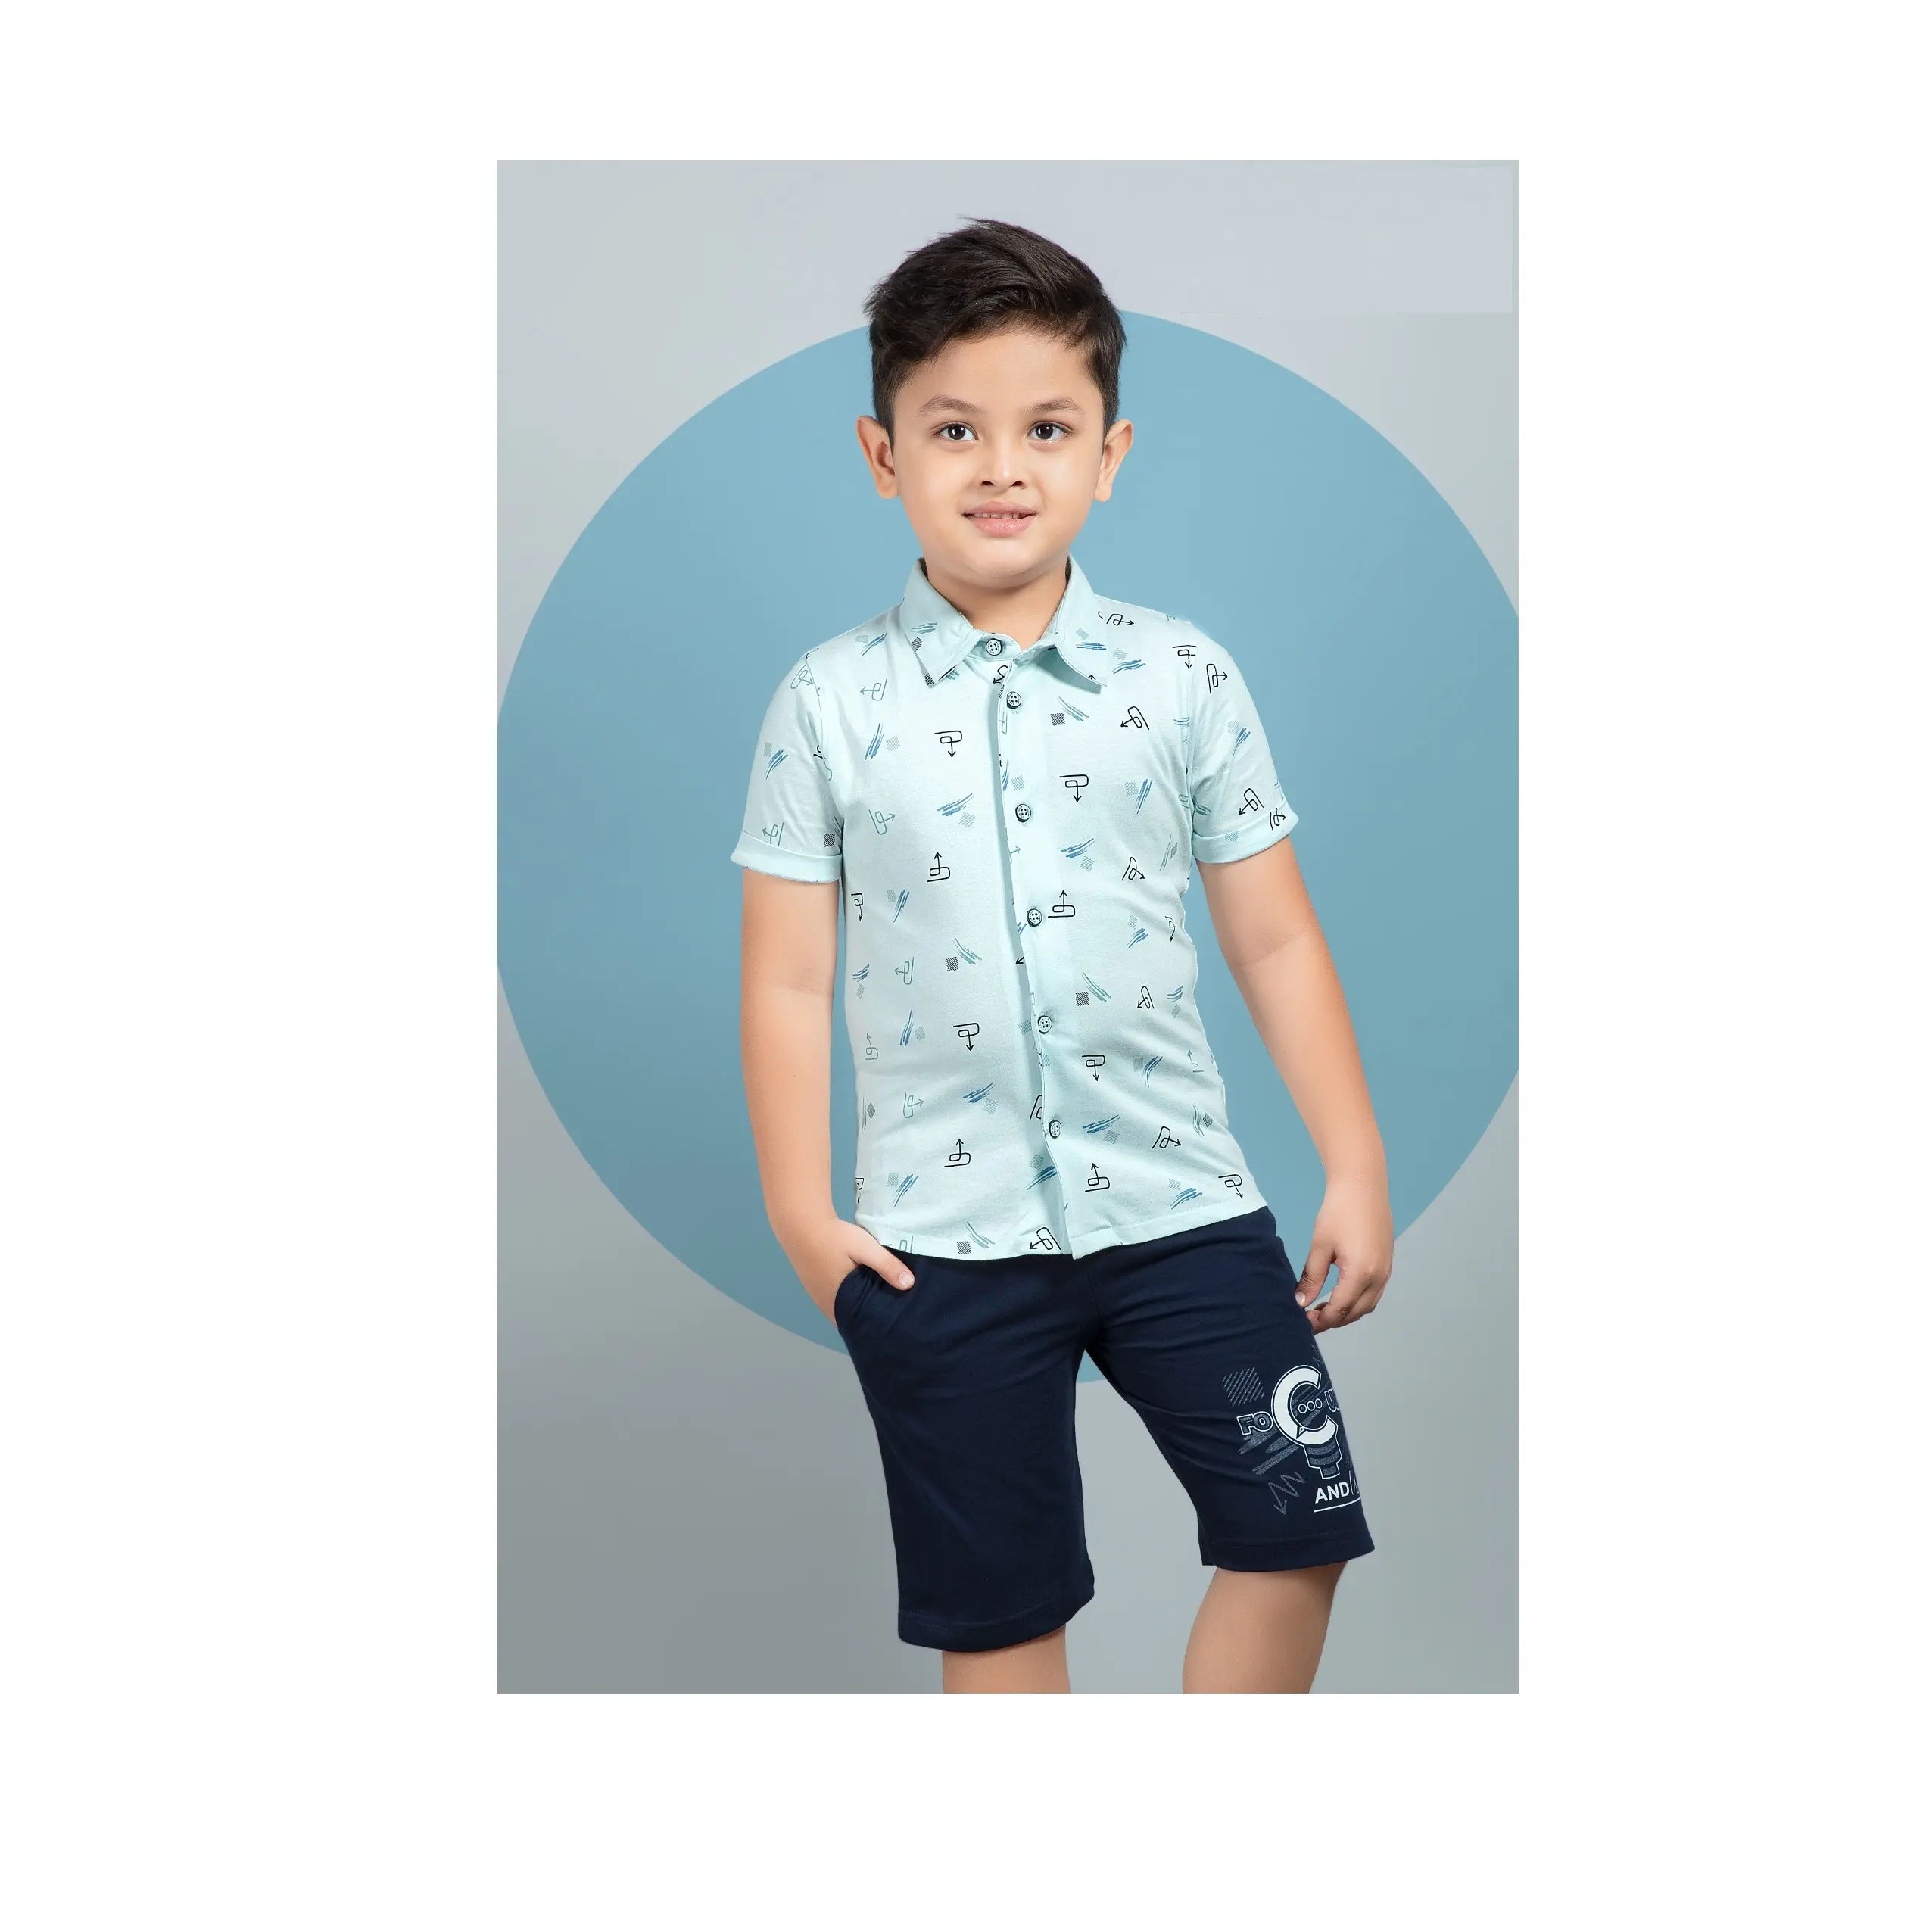 Conjuntos de roupas infantis sólidas para meninos de qualidade de exportação, camisa e calça para bebês, disponíveis a preço acessível na Índia